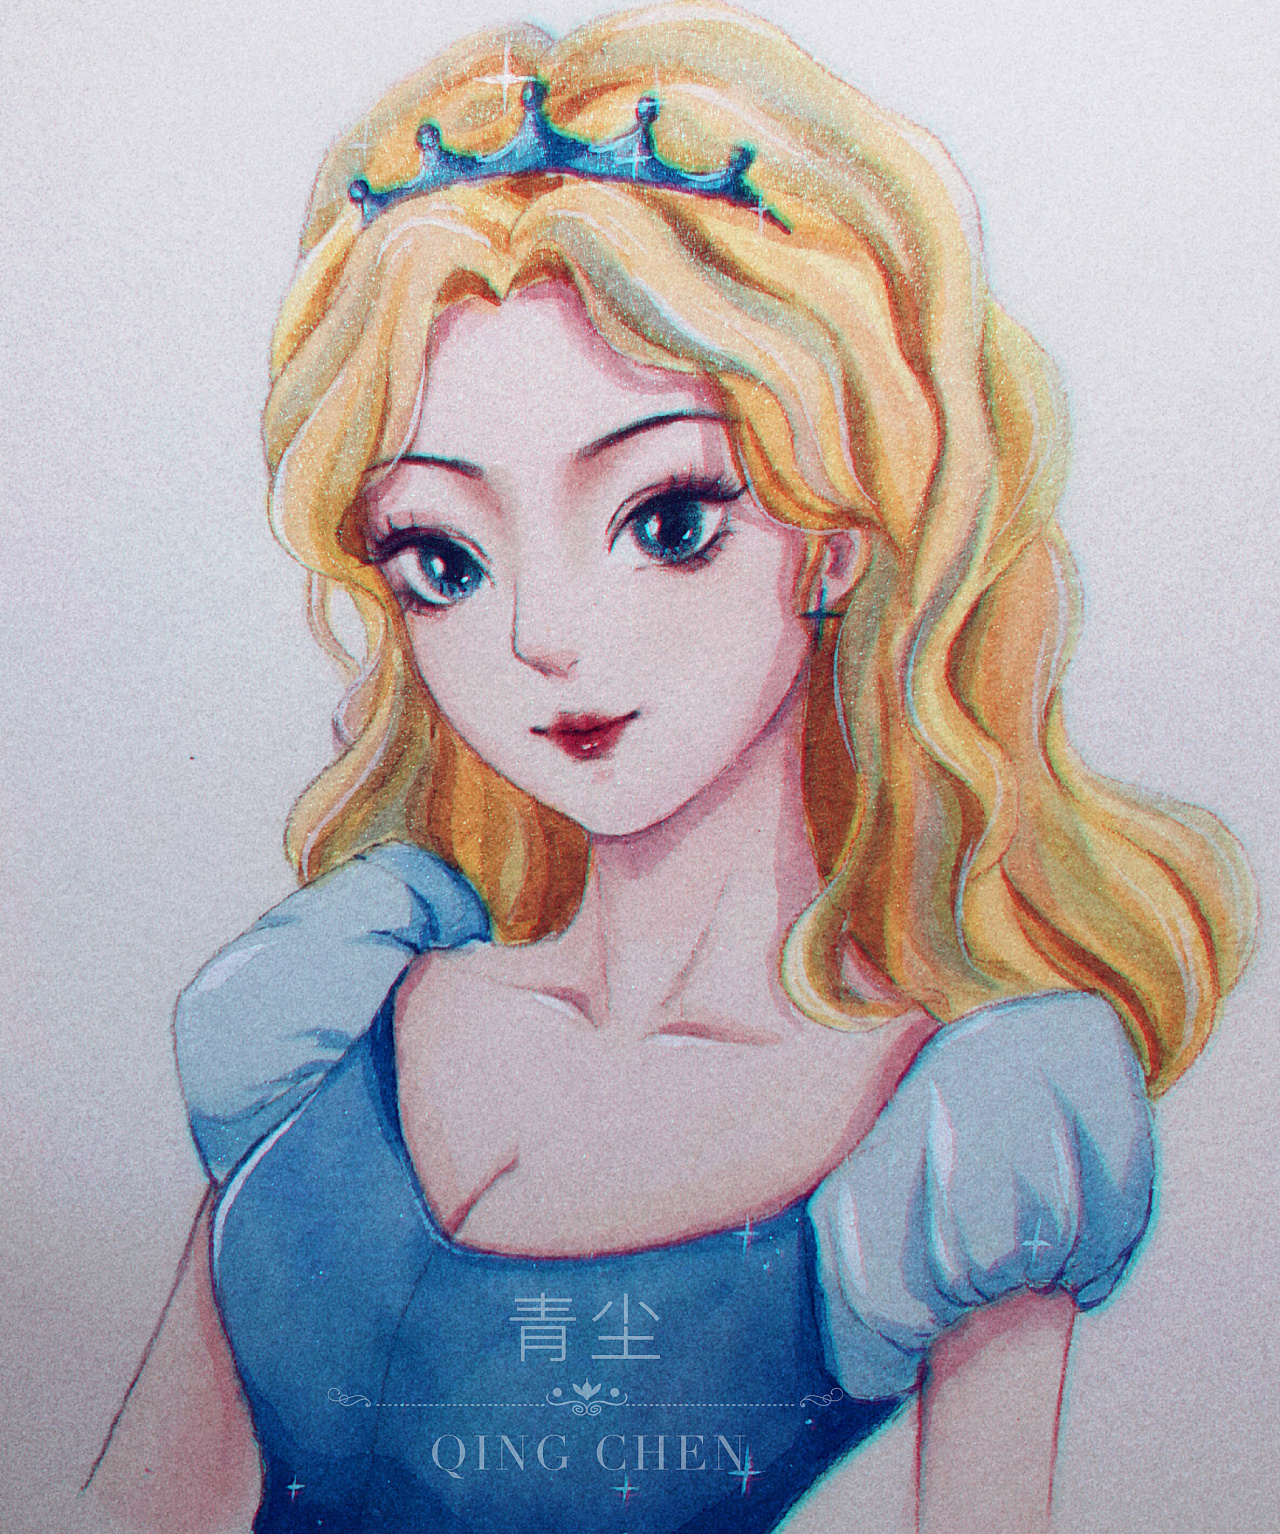 迪士尼公主仙女风手绘图片